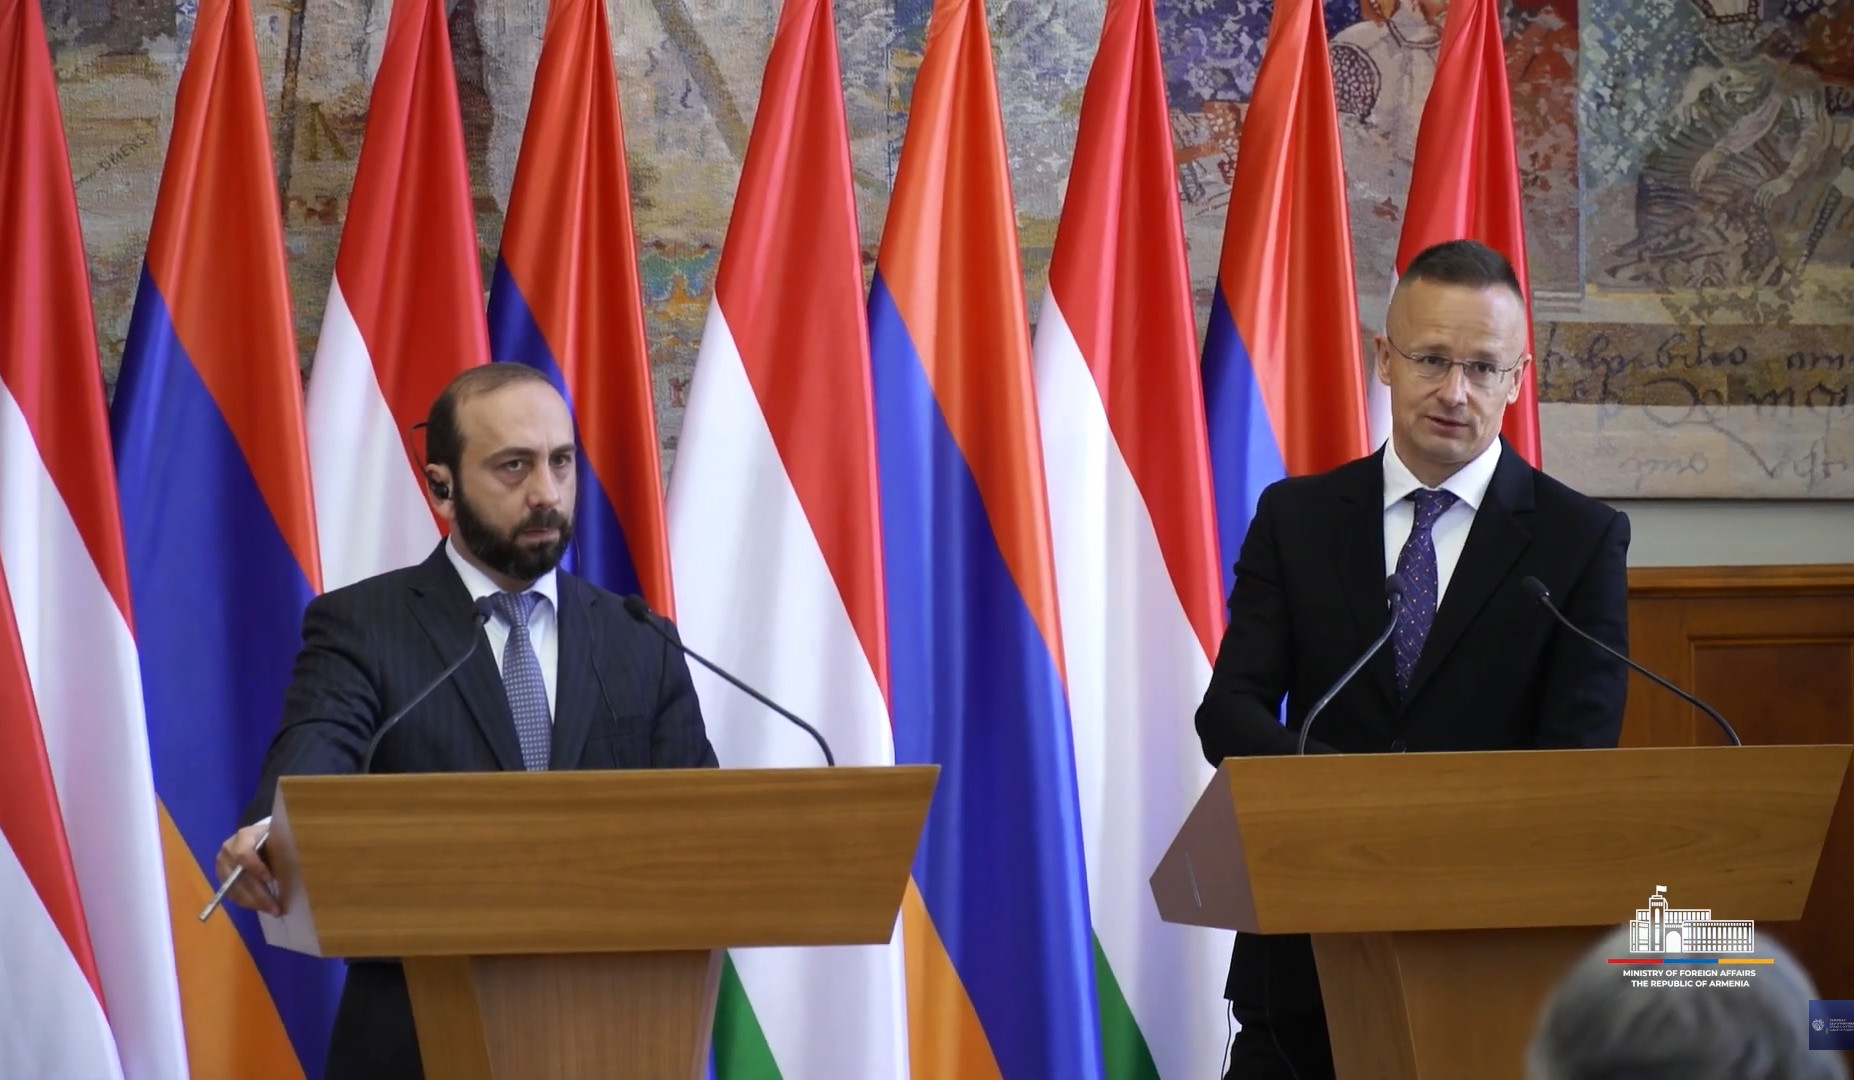 We are preparing partnership agenda between EU and Armenia: Péter Szijjártó